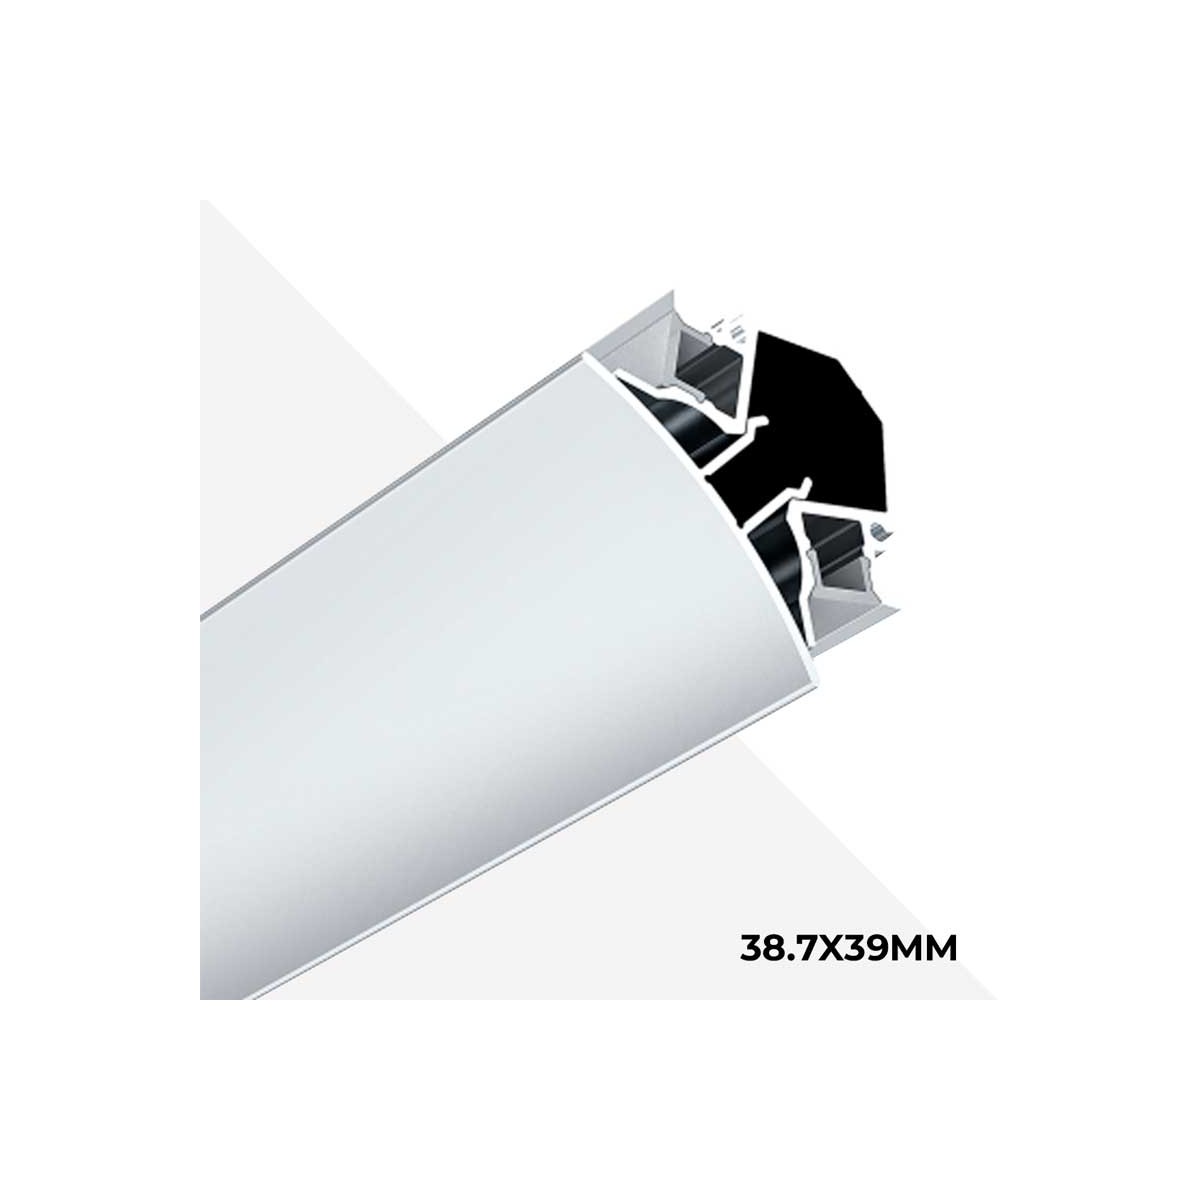 Das 38,7x39mm große Aluminium-Eckprofil mit LED-Streifen sorgt für eine doppelte Ausleuchtung von Wänden und Decken.